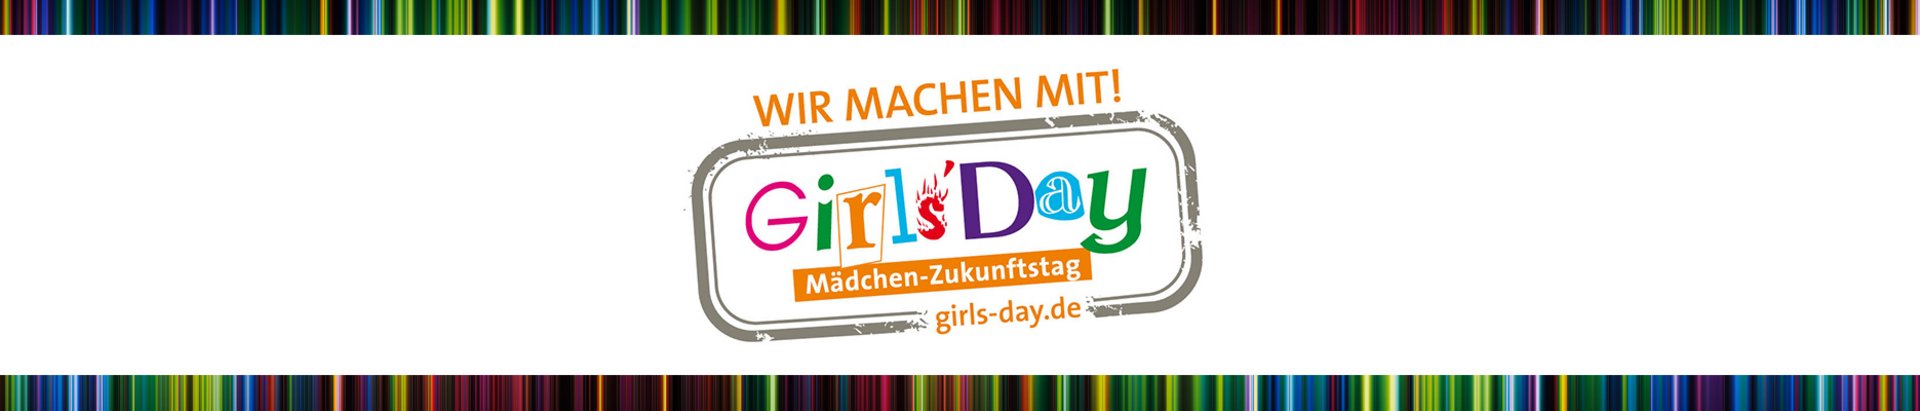 EMCC Girl's Day – WIR MACHEN MIT!